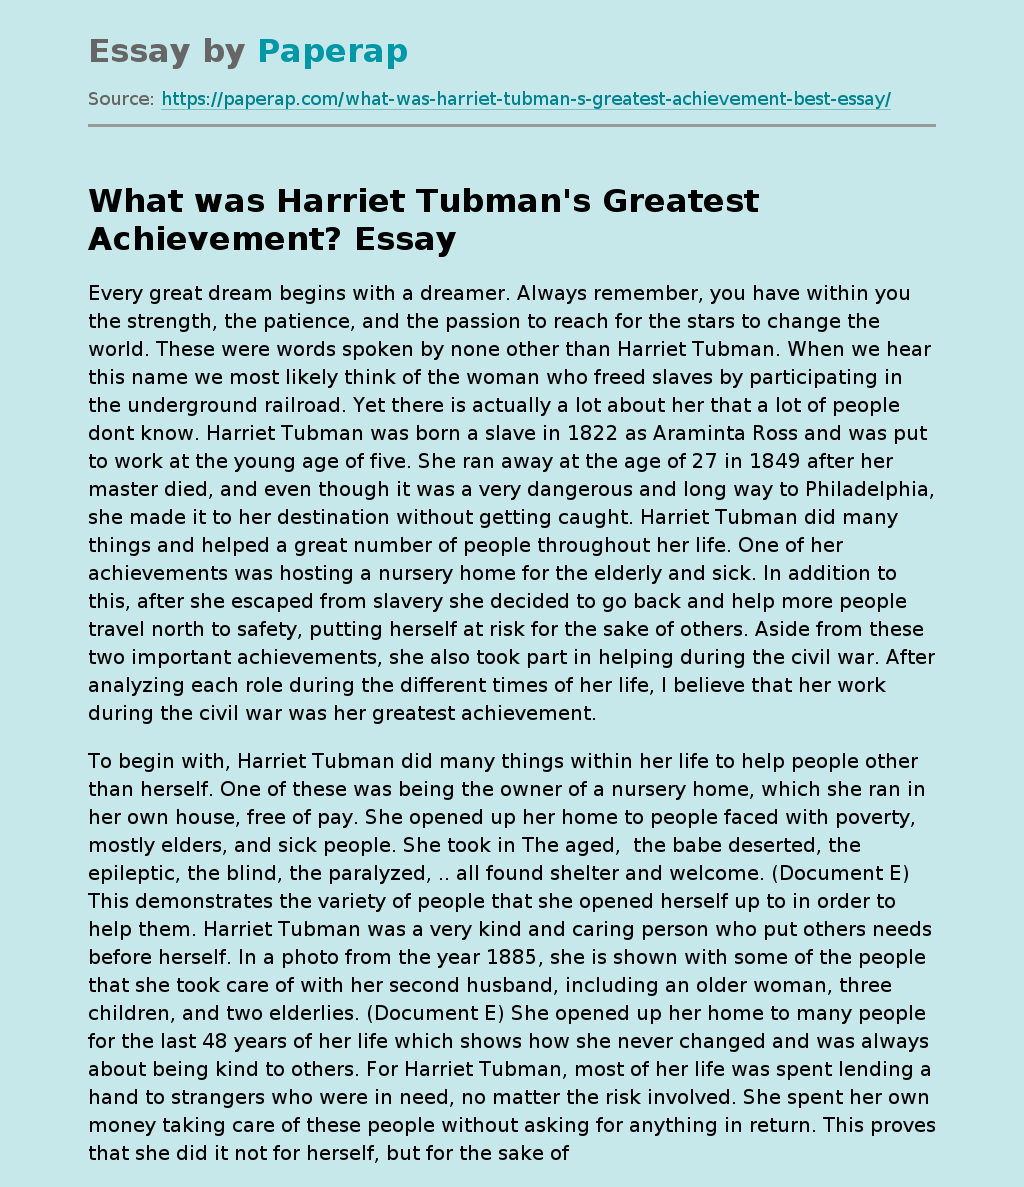 What was Harriet Tubman's Greatest Achievement?